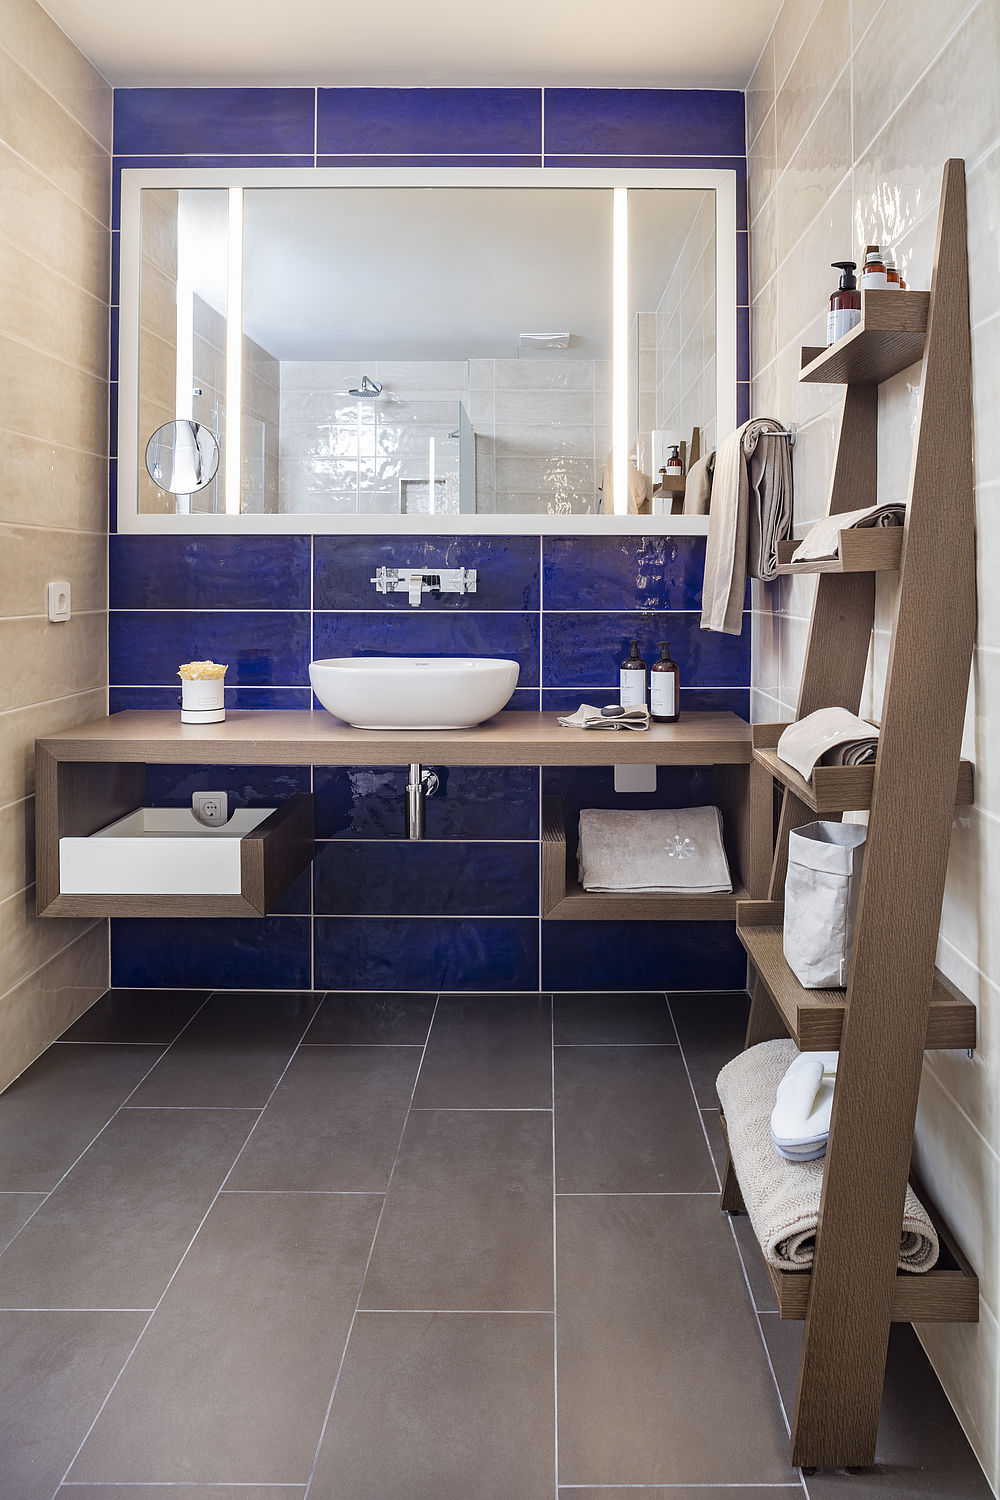 Das Standard-Badezimmer besitzt Möbel aus dunklem Holz, blaue und braune Fliesen, einige Handtücher und Pflegeprodukte